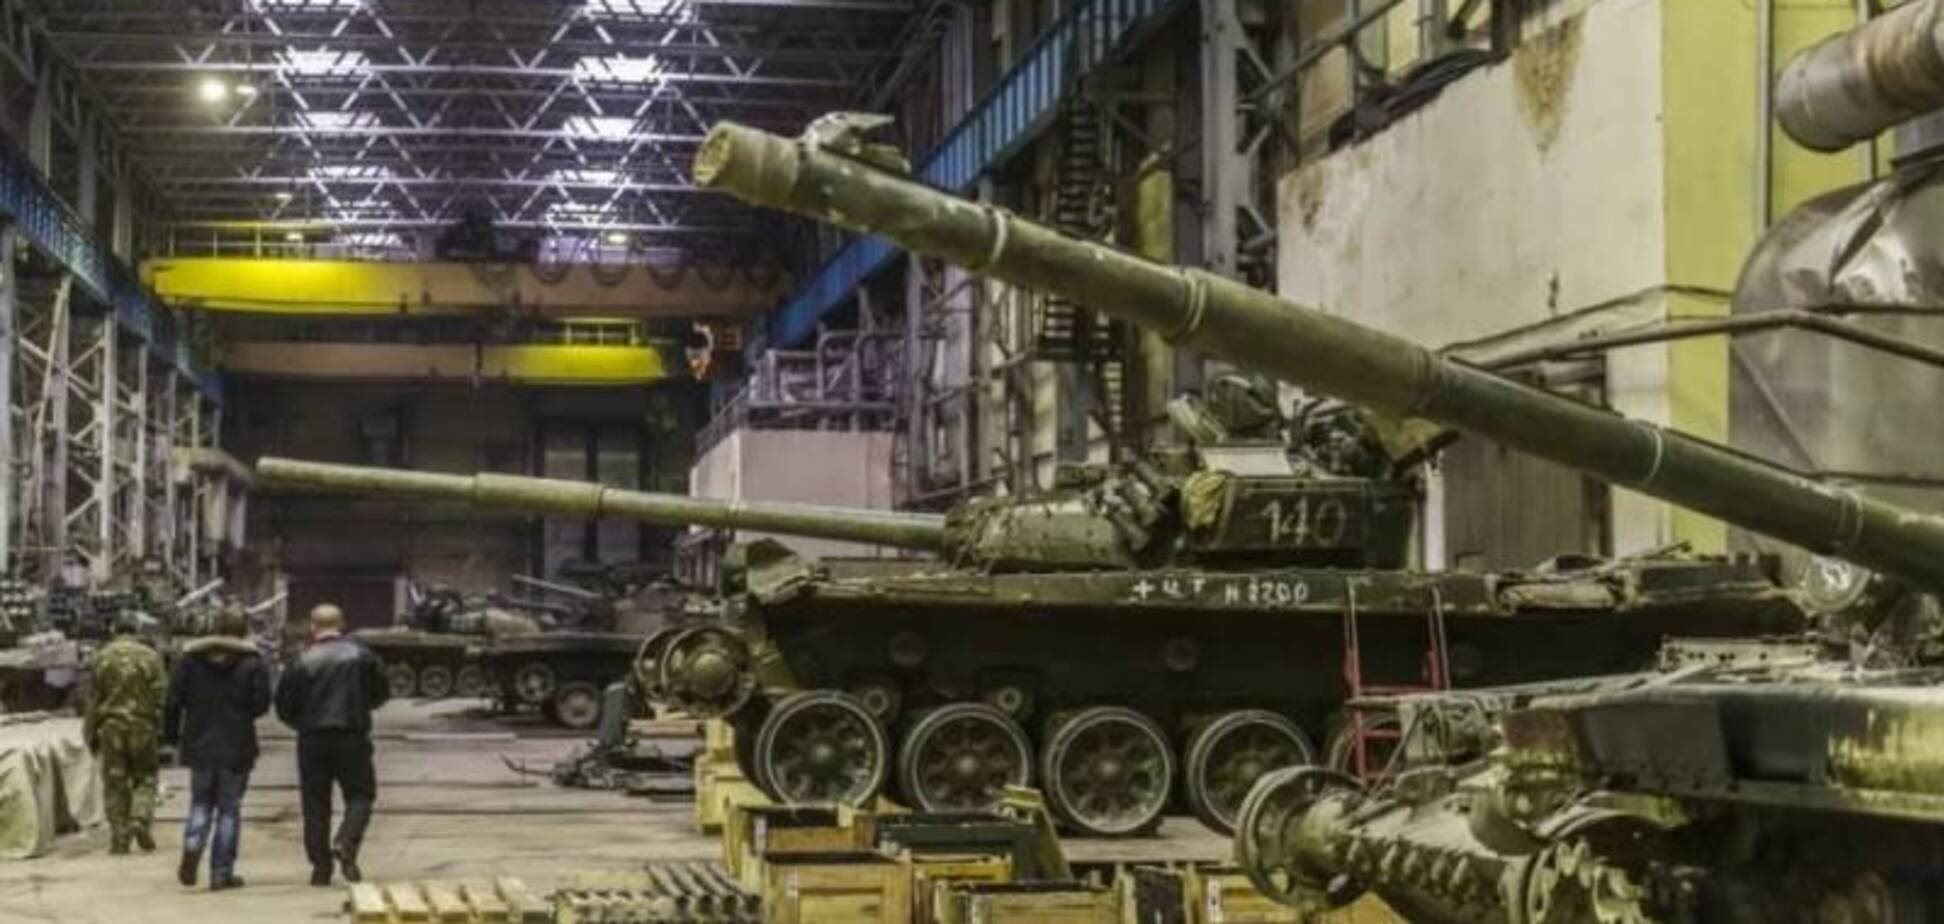 Знову 'українська ДРГ'? Пожежа на танковому заводі в Росії викликав ажіотаж у мережі